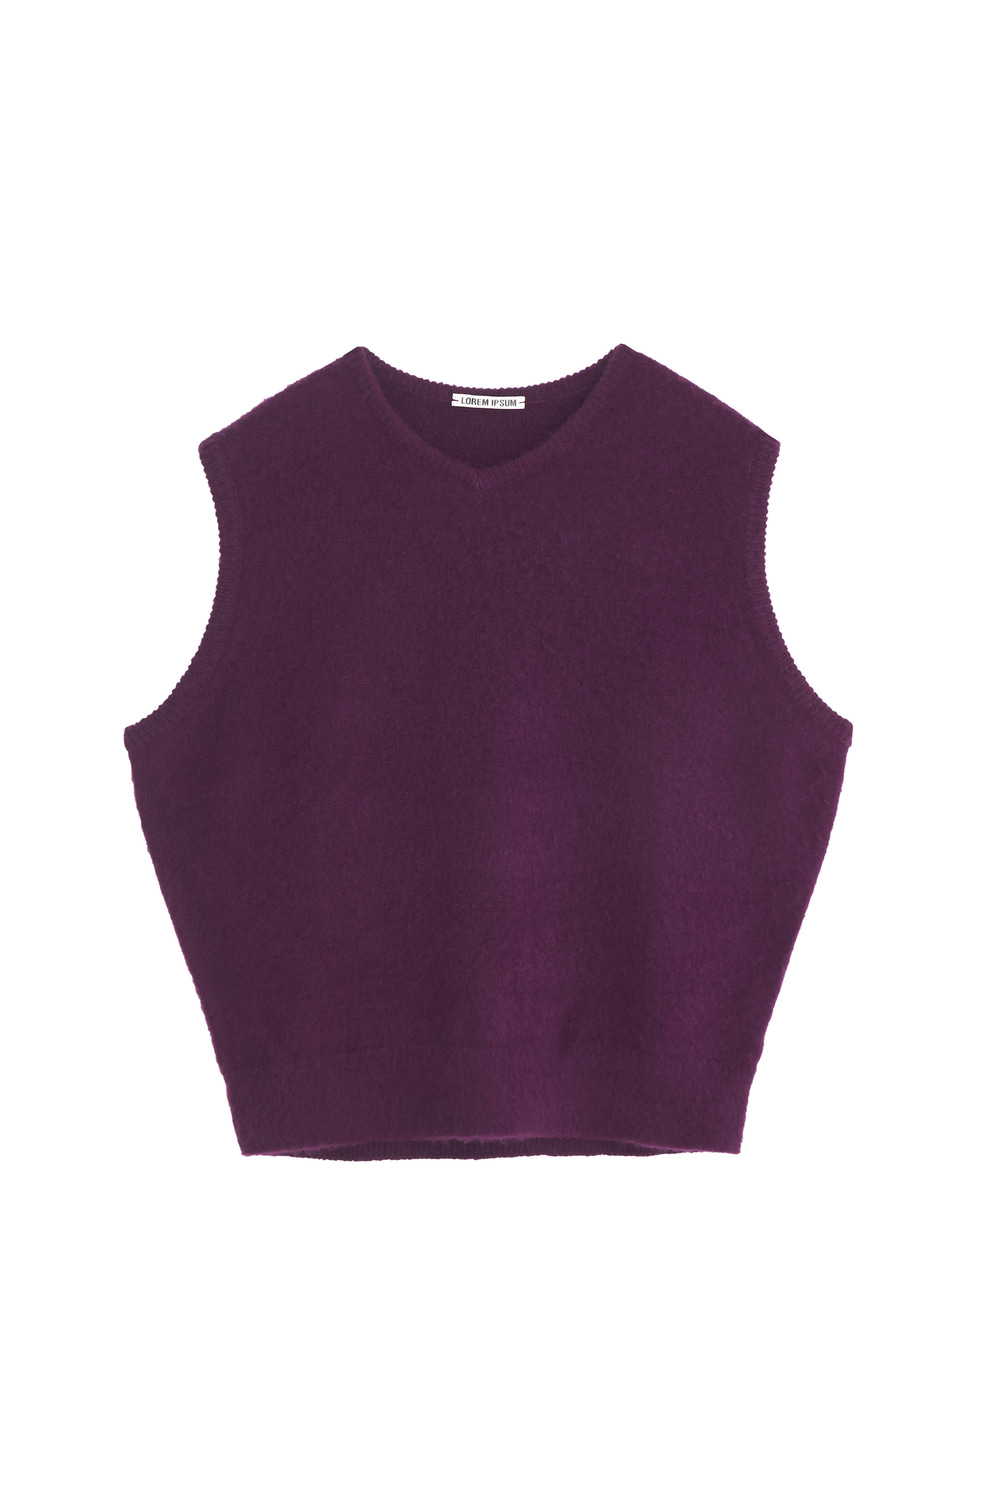 Mohair Vest(Purple)